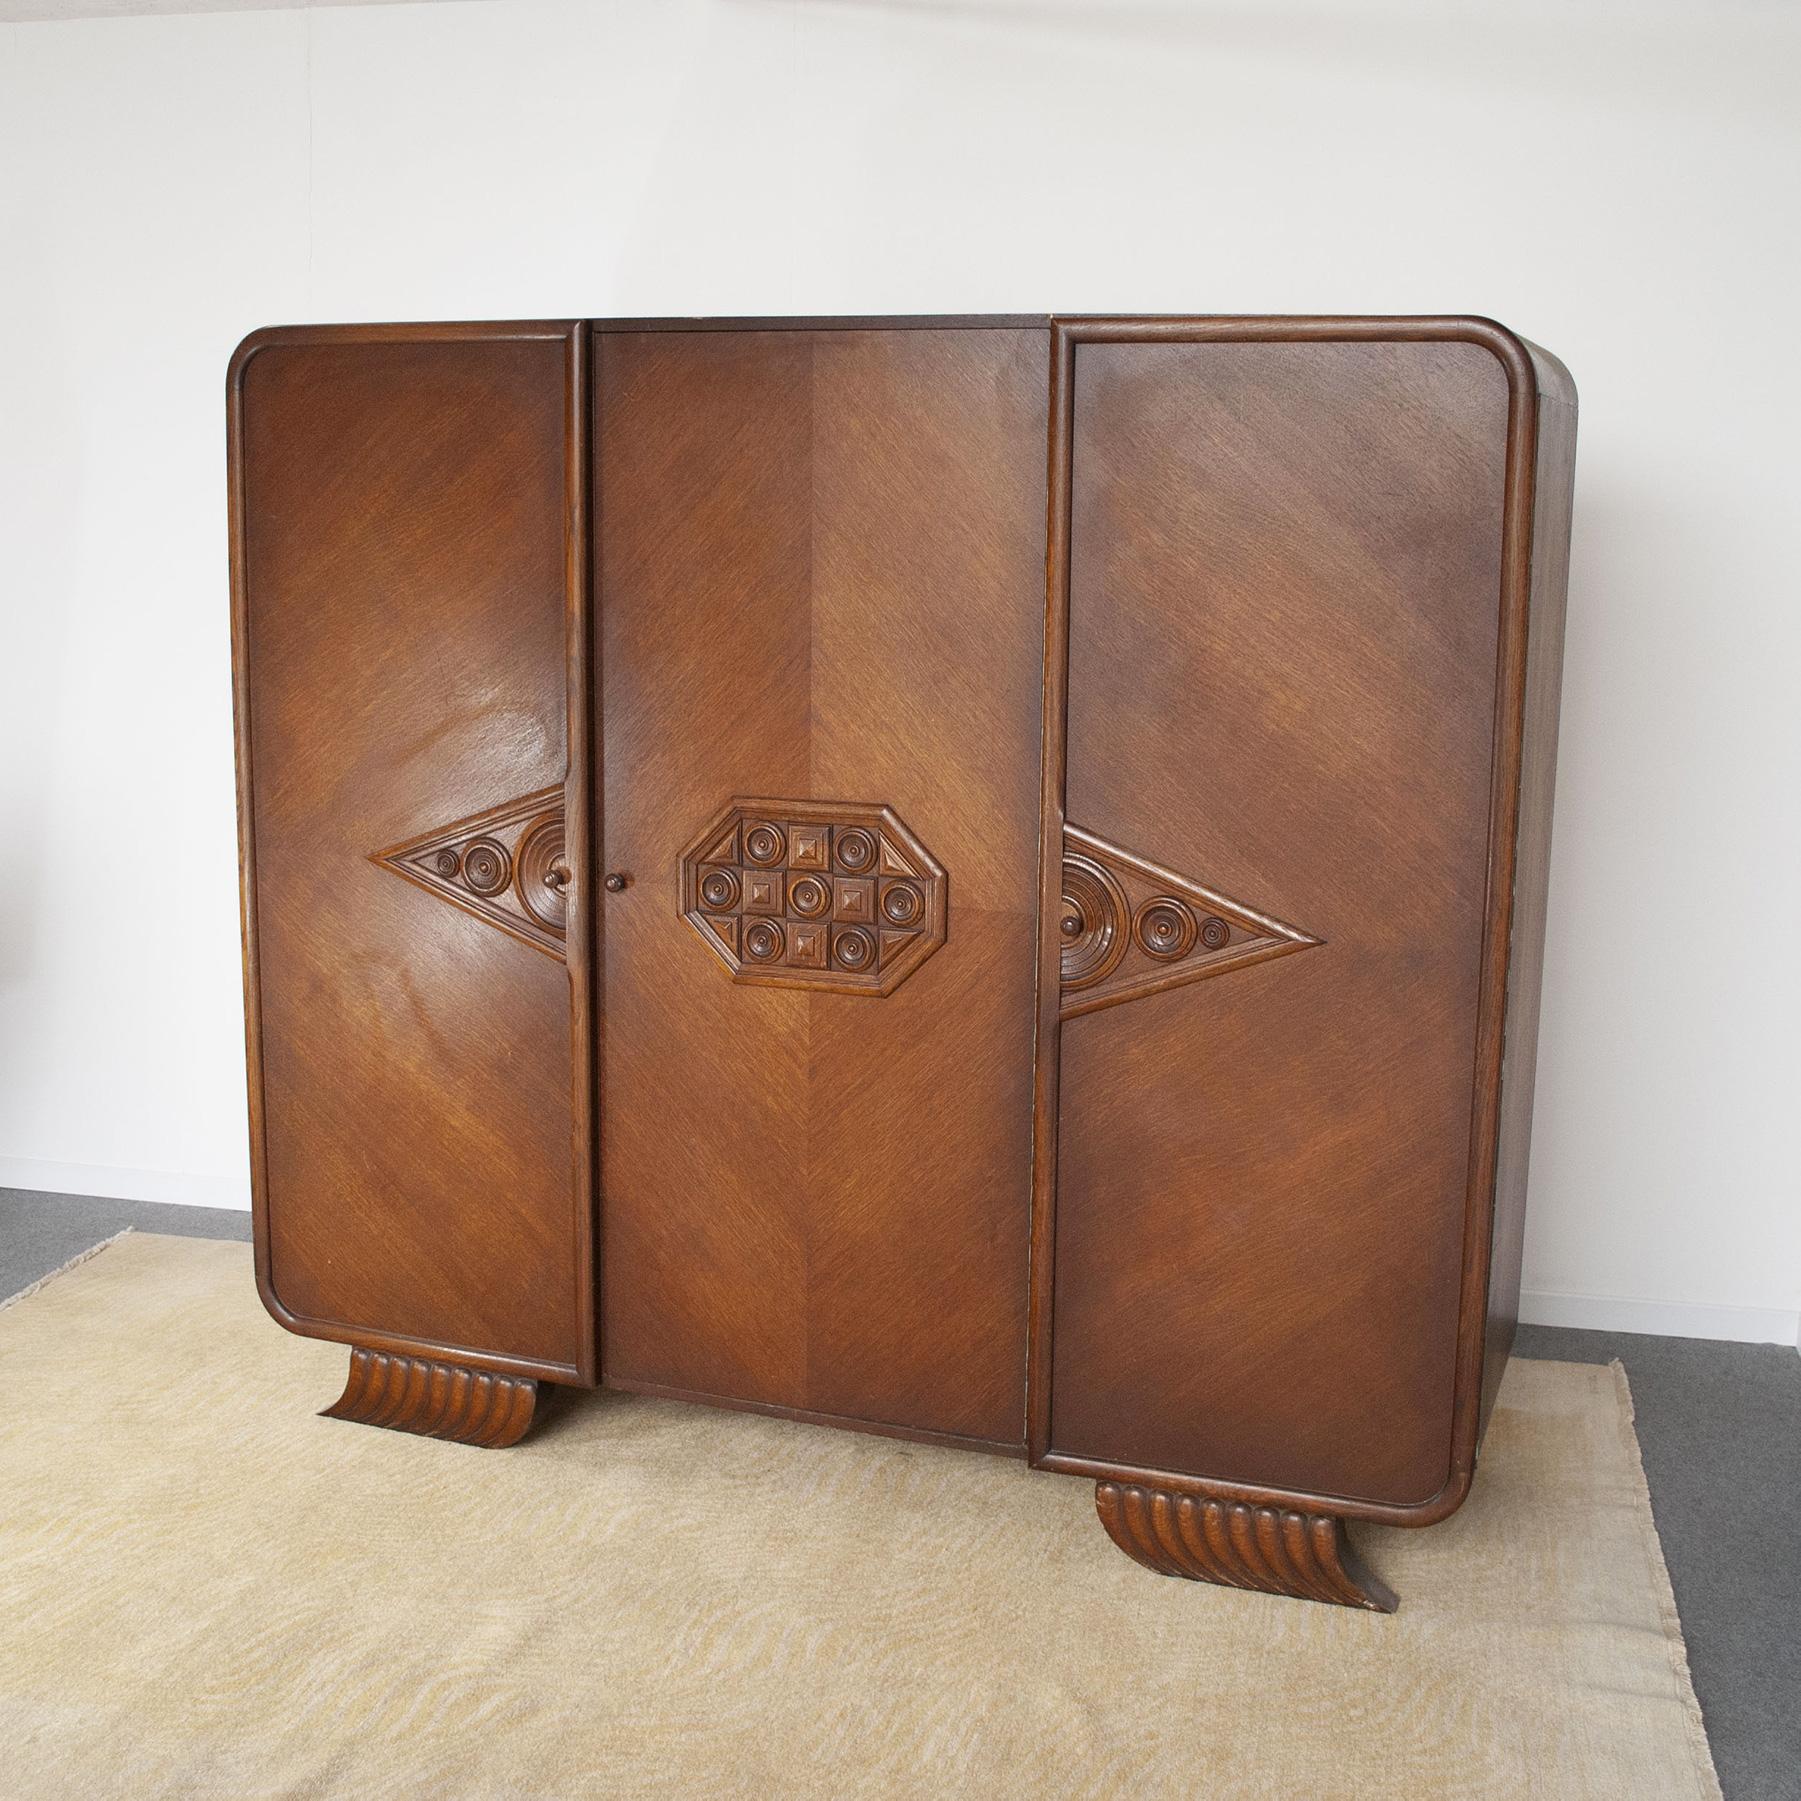 Originaler Kleiderschrank mit drei Türen und Intarsien im Art-déco-Stil, wahrscheinlich französische Produktion aus den 1940er Jahren.